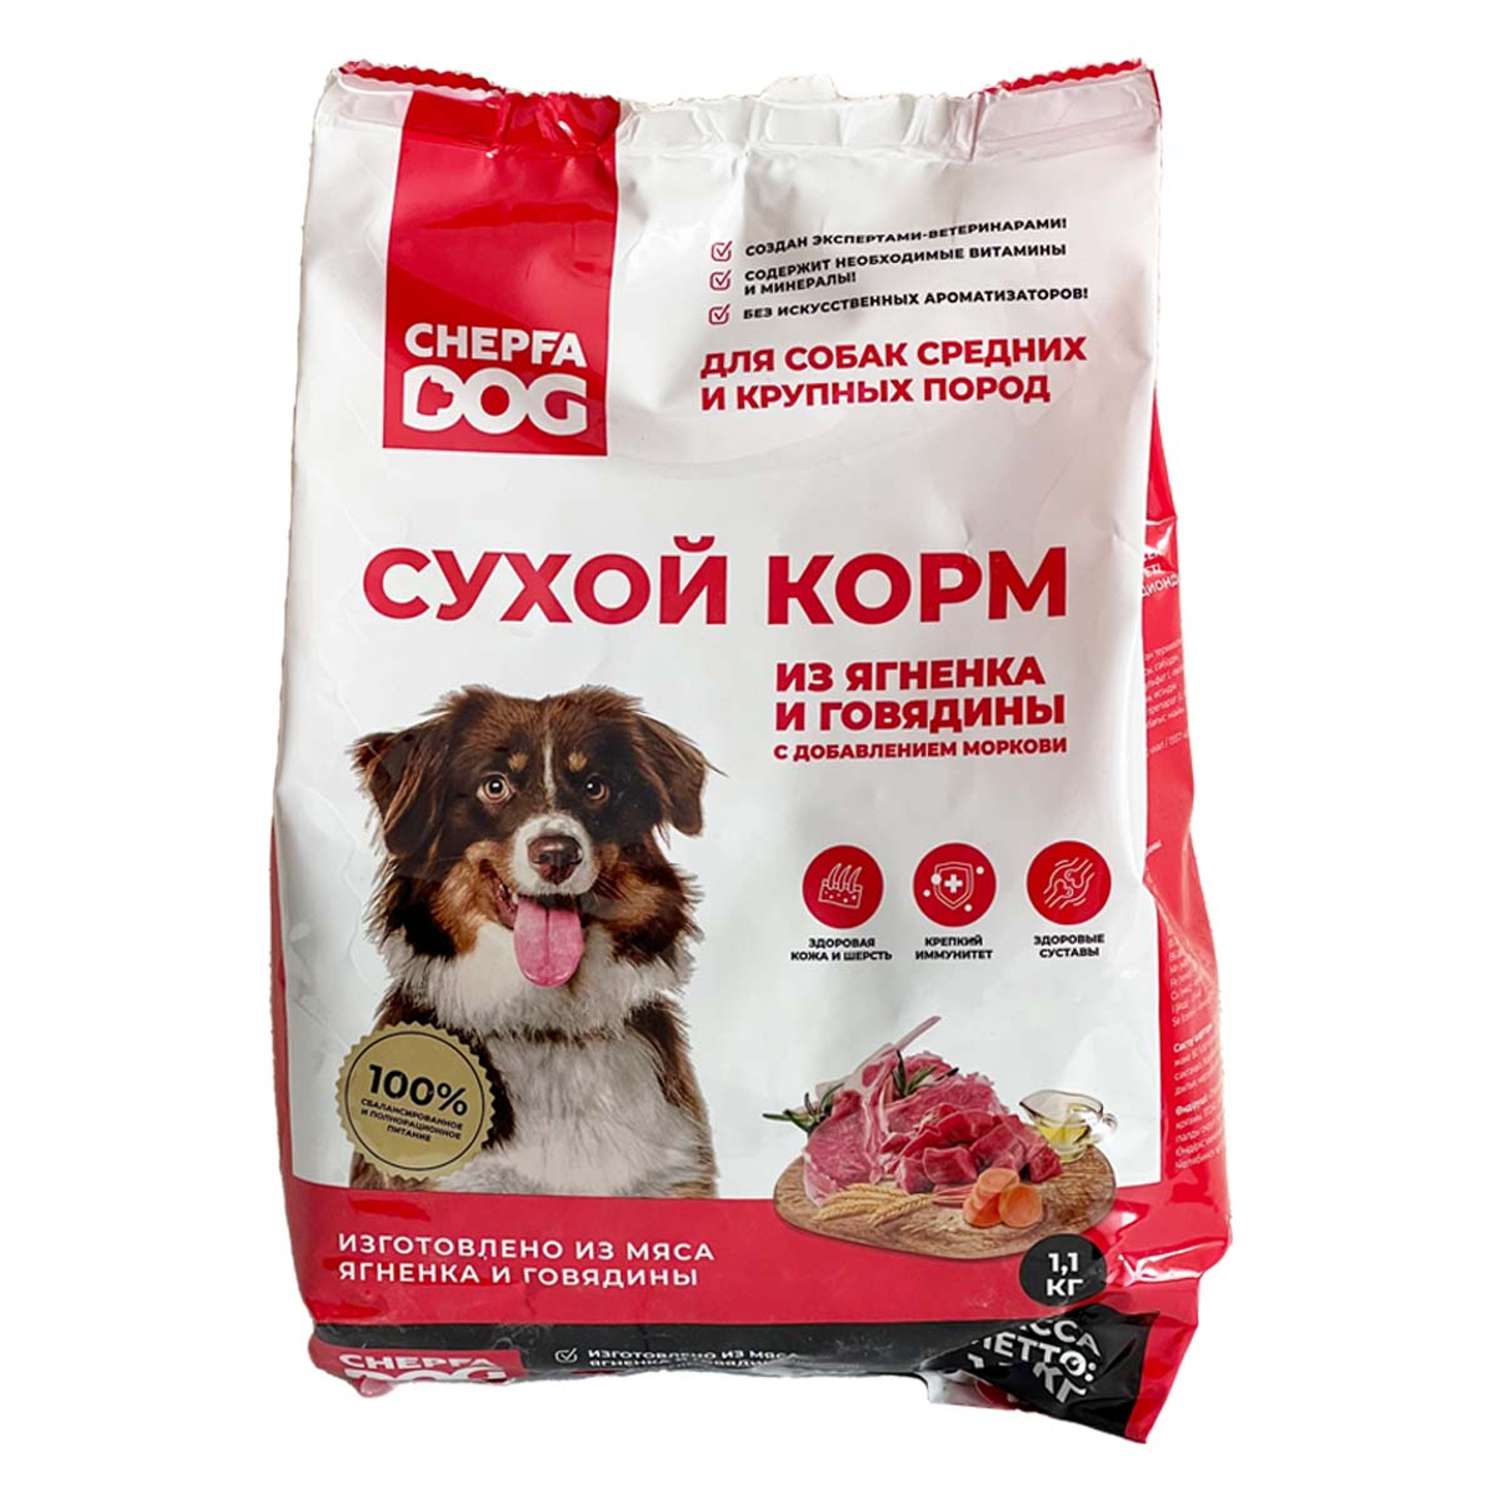 Сухой корм Chepfa Dog полнорационный ягненок и говядина 1.1 кг для взрослых собак средних и крупных пород - фото 1